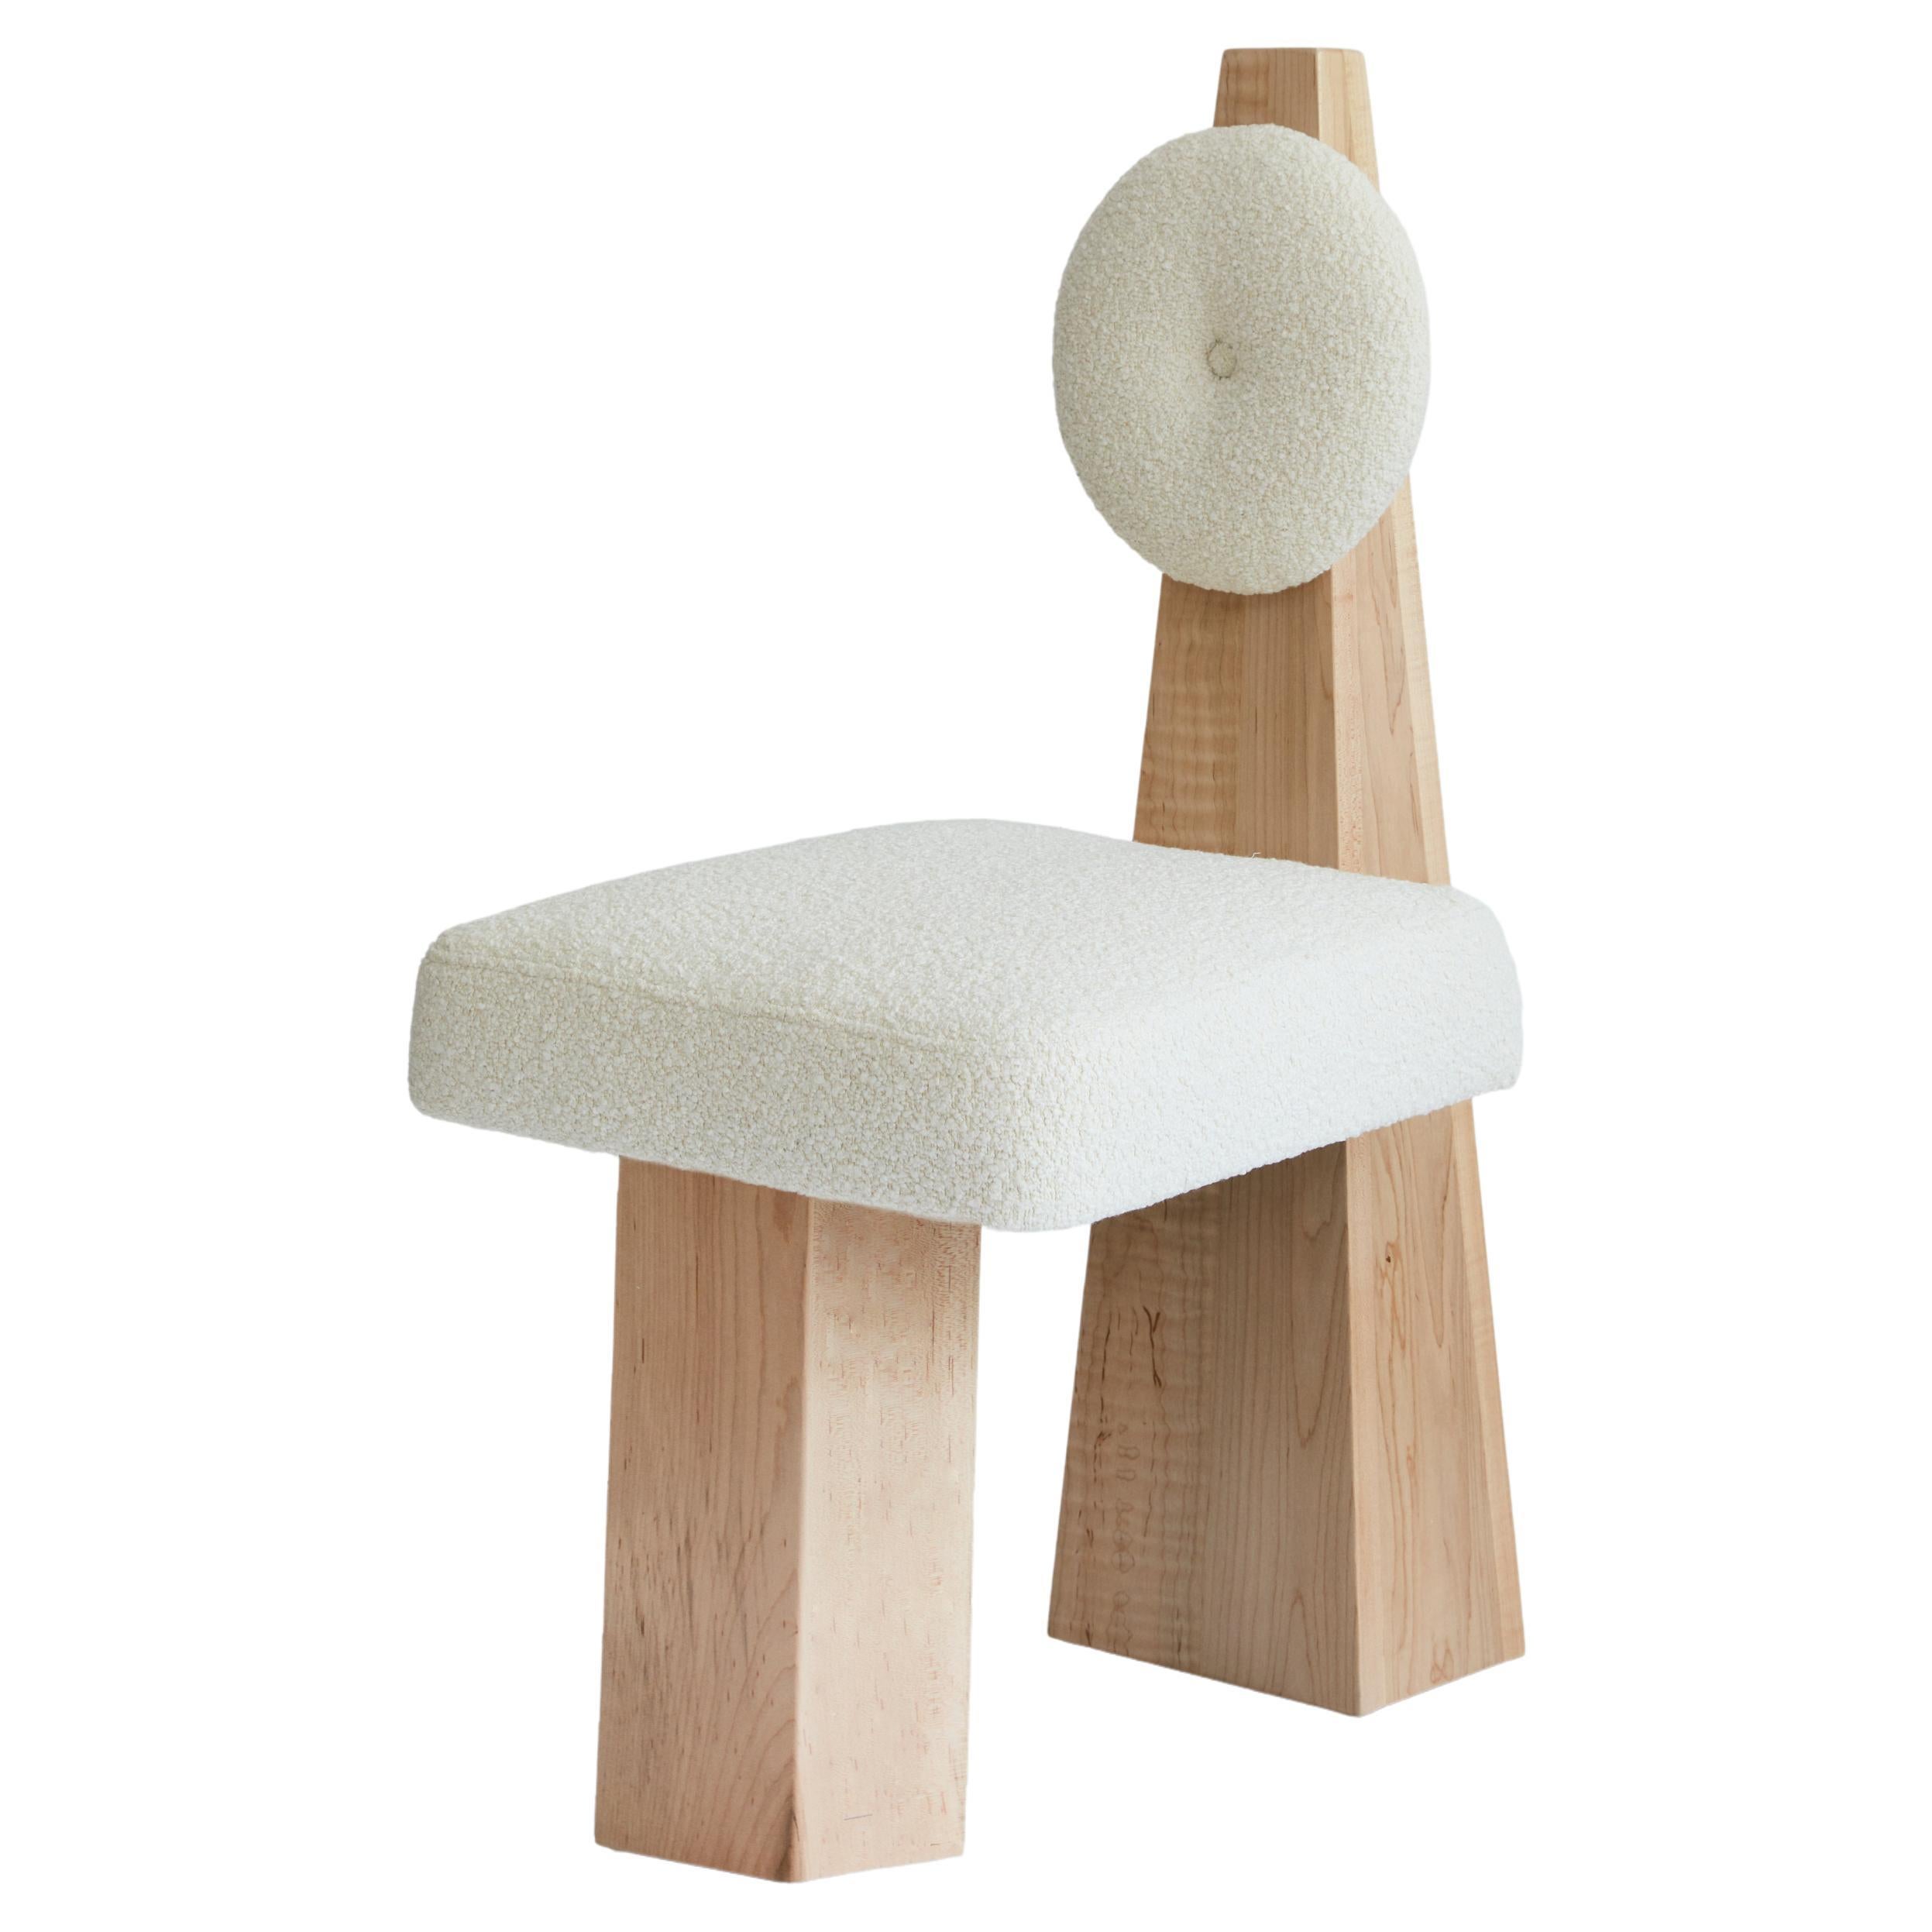 Chaise Lula, chaise Boucl ivoire et chaise en bois naturel de Christian Siriano